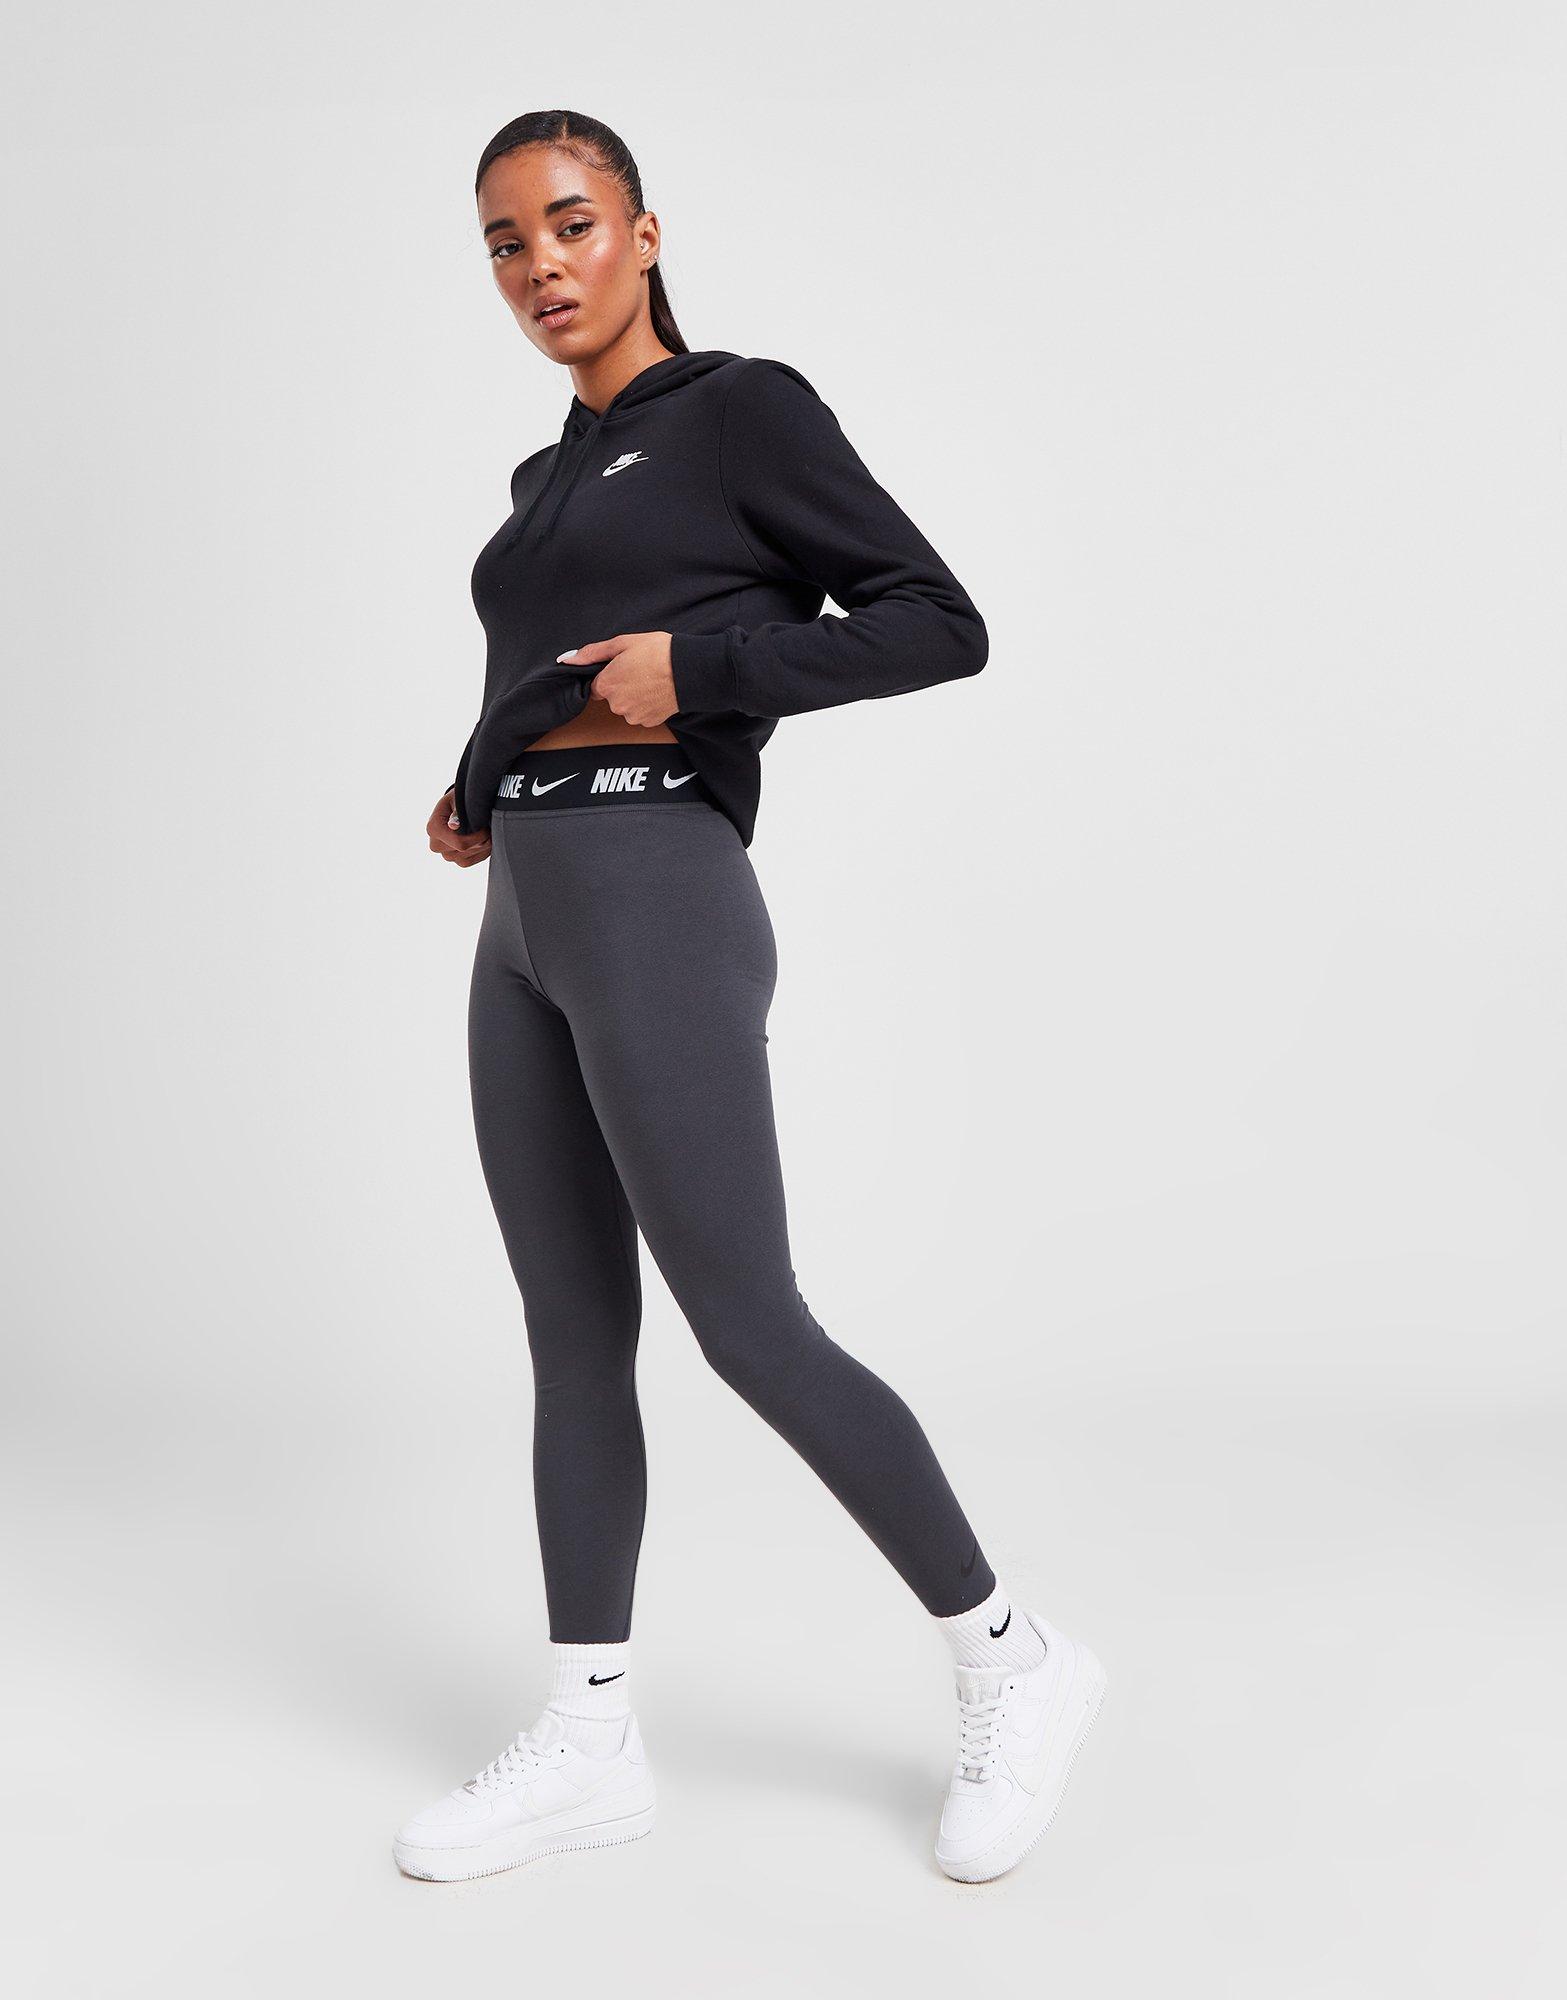 Grey Nike High-Waisted Logo Leggings - JD Sports Global